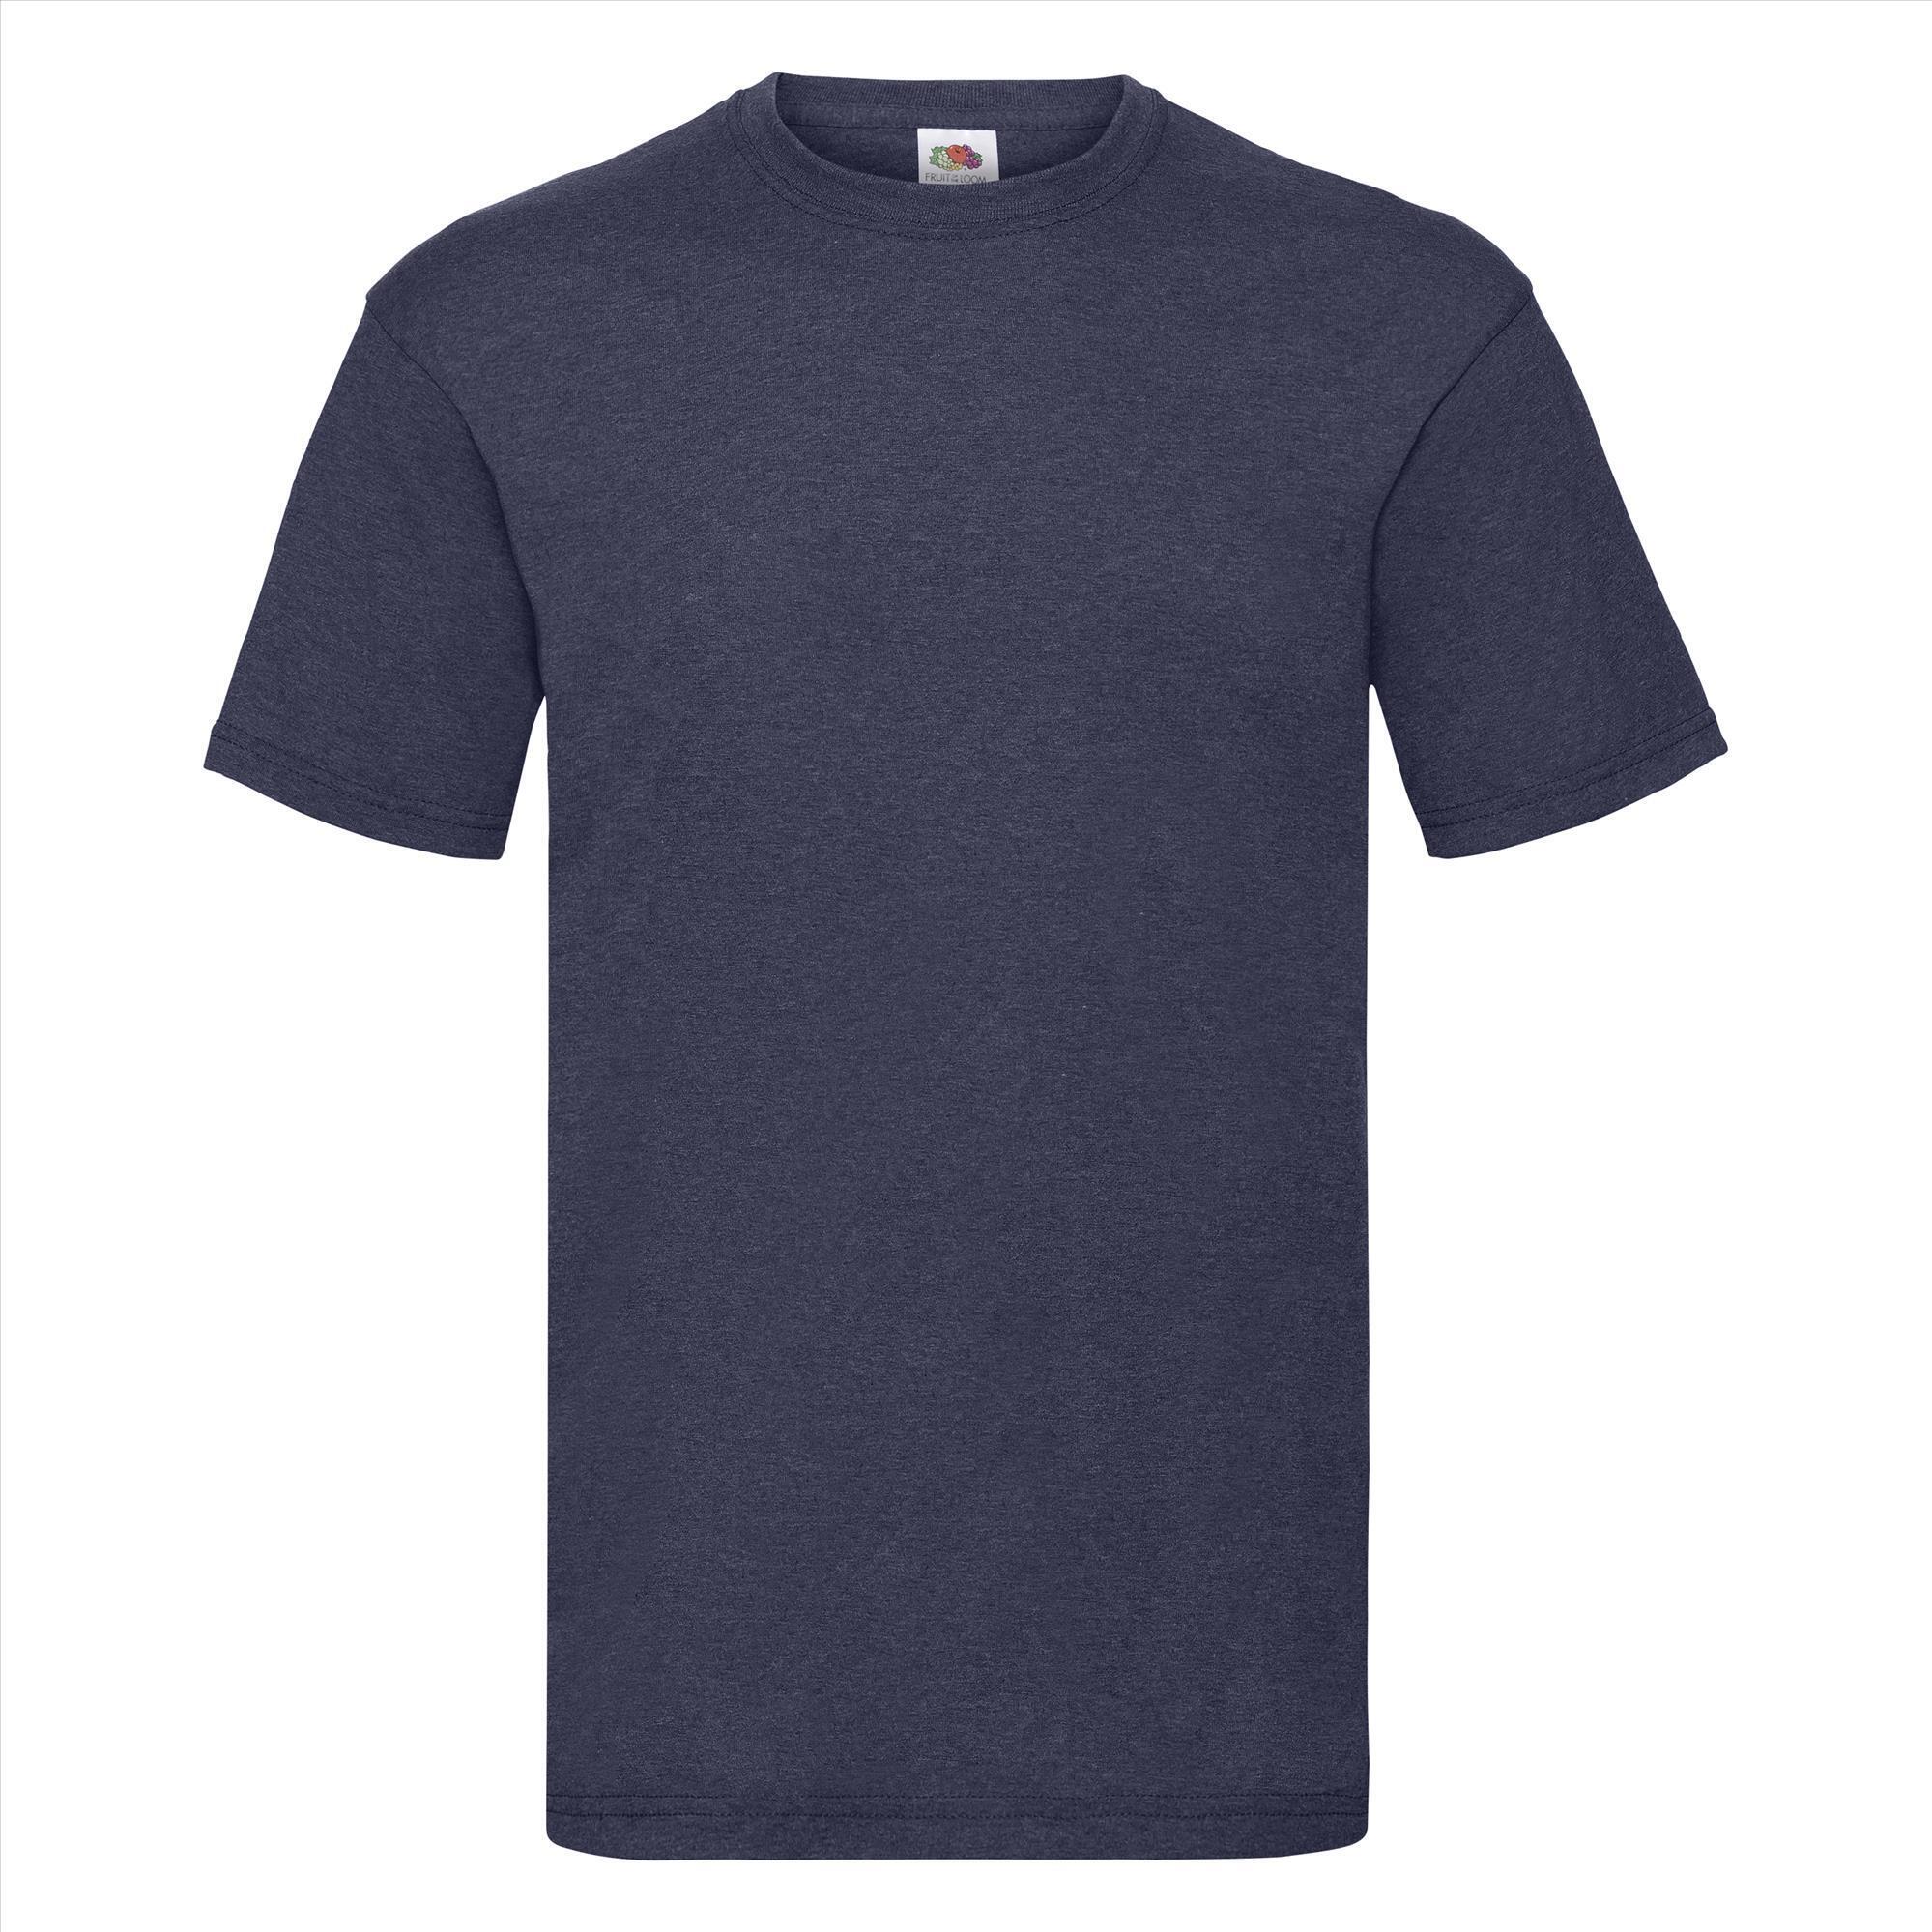 T-shirt voor mannen vintage heather navy personaliseren T-shirt bedrukken